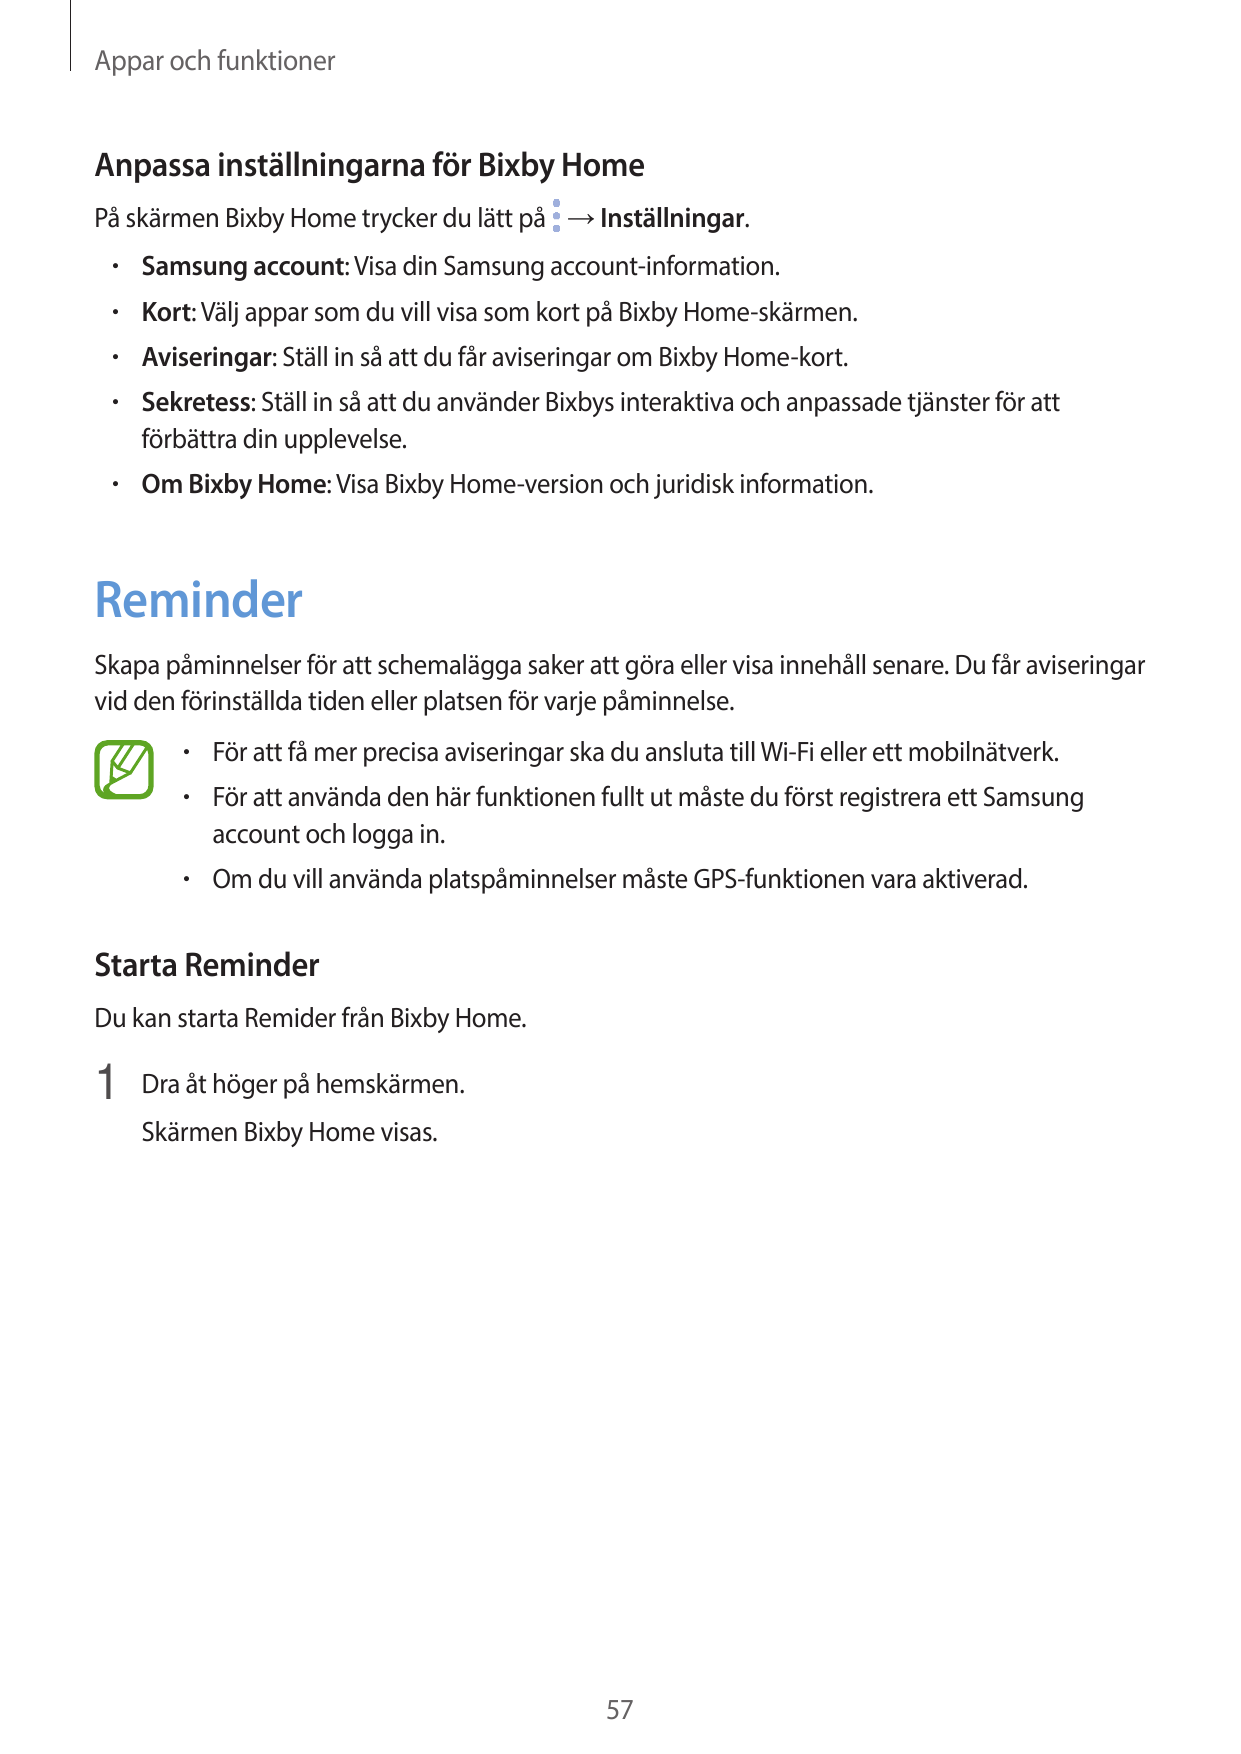 Appar och funktionerAnpassa inställningarna för Bixby HomePå skärmen Bixby Home trycker du lätt på → Inställningar.• Samsung acc